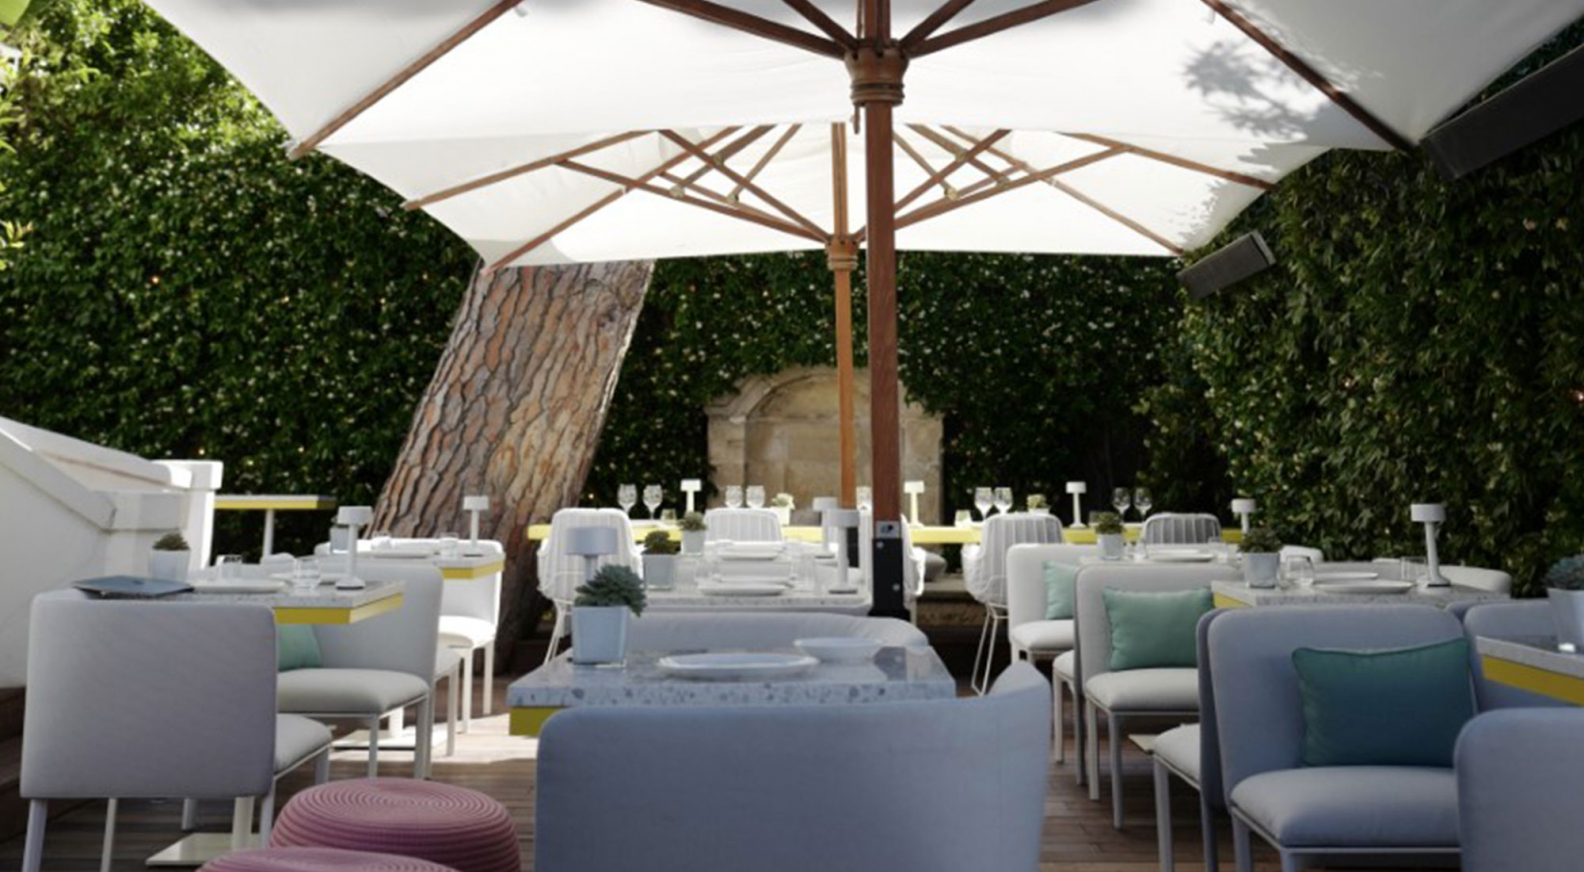 Louis Vuitton opens Saint Tropez cafe